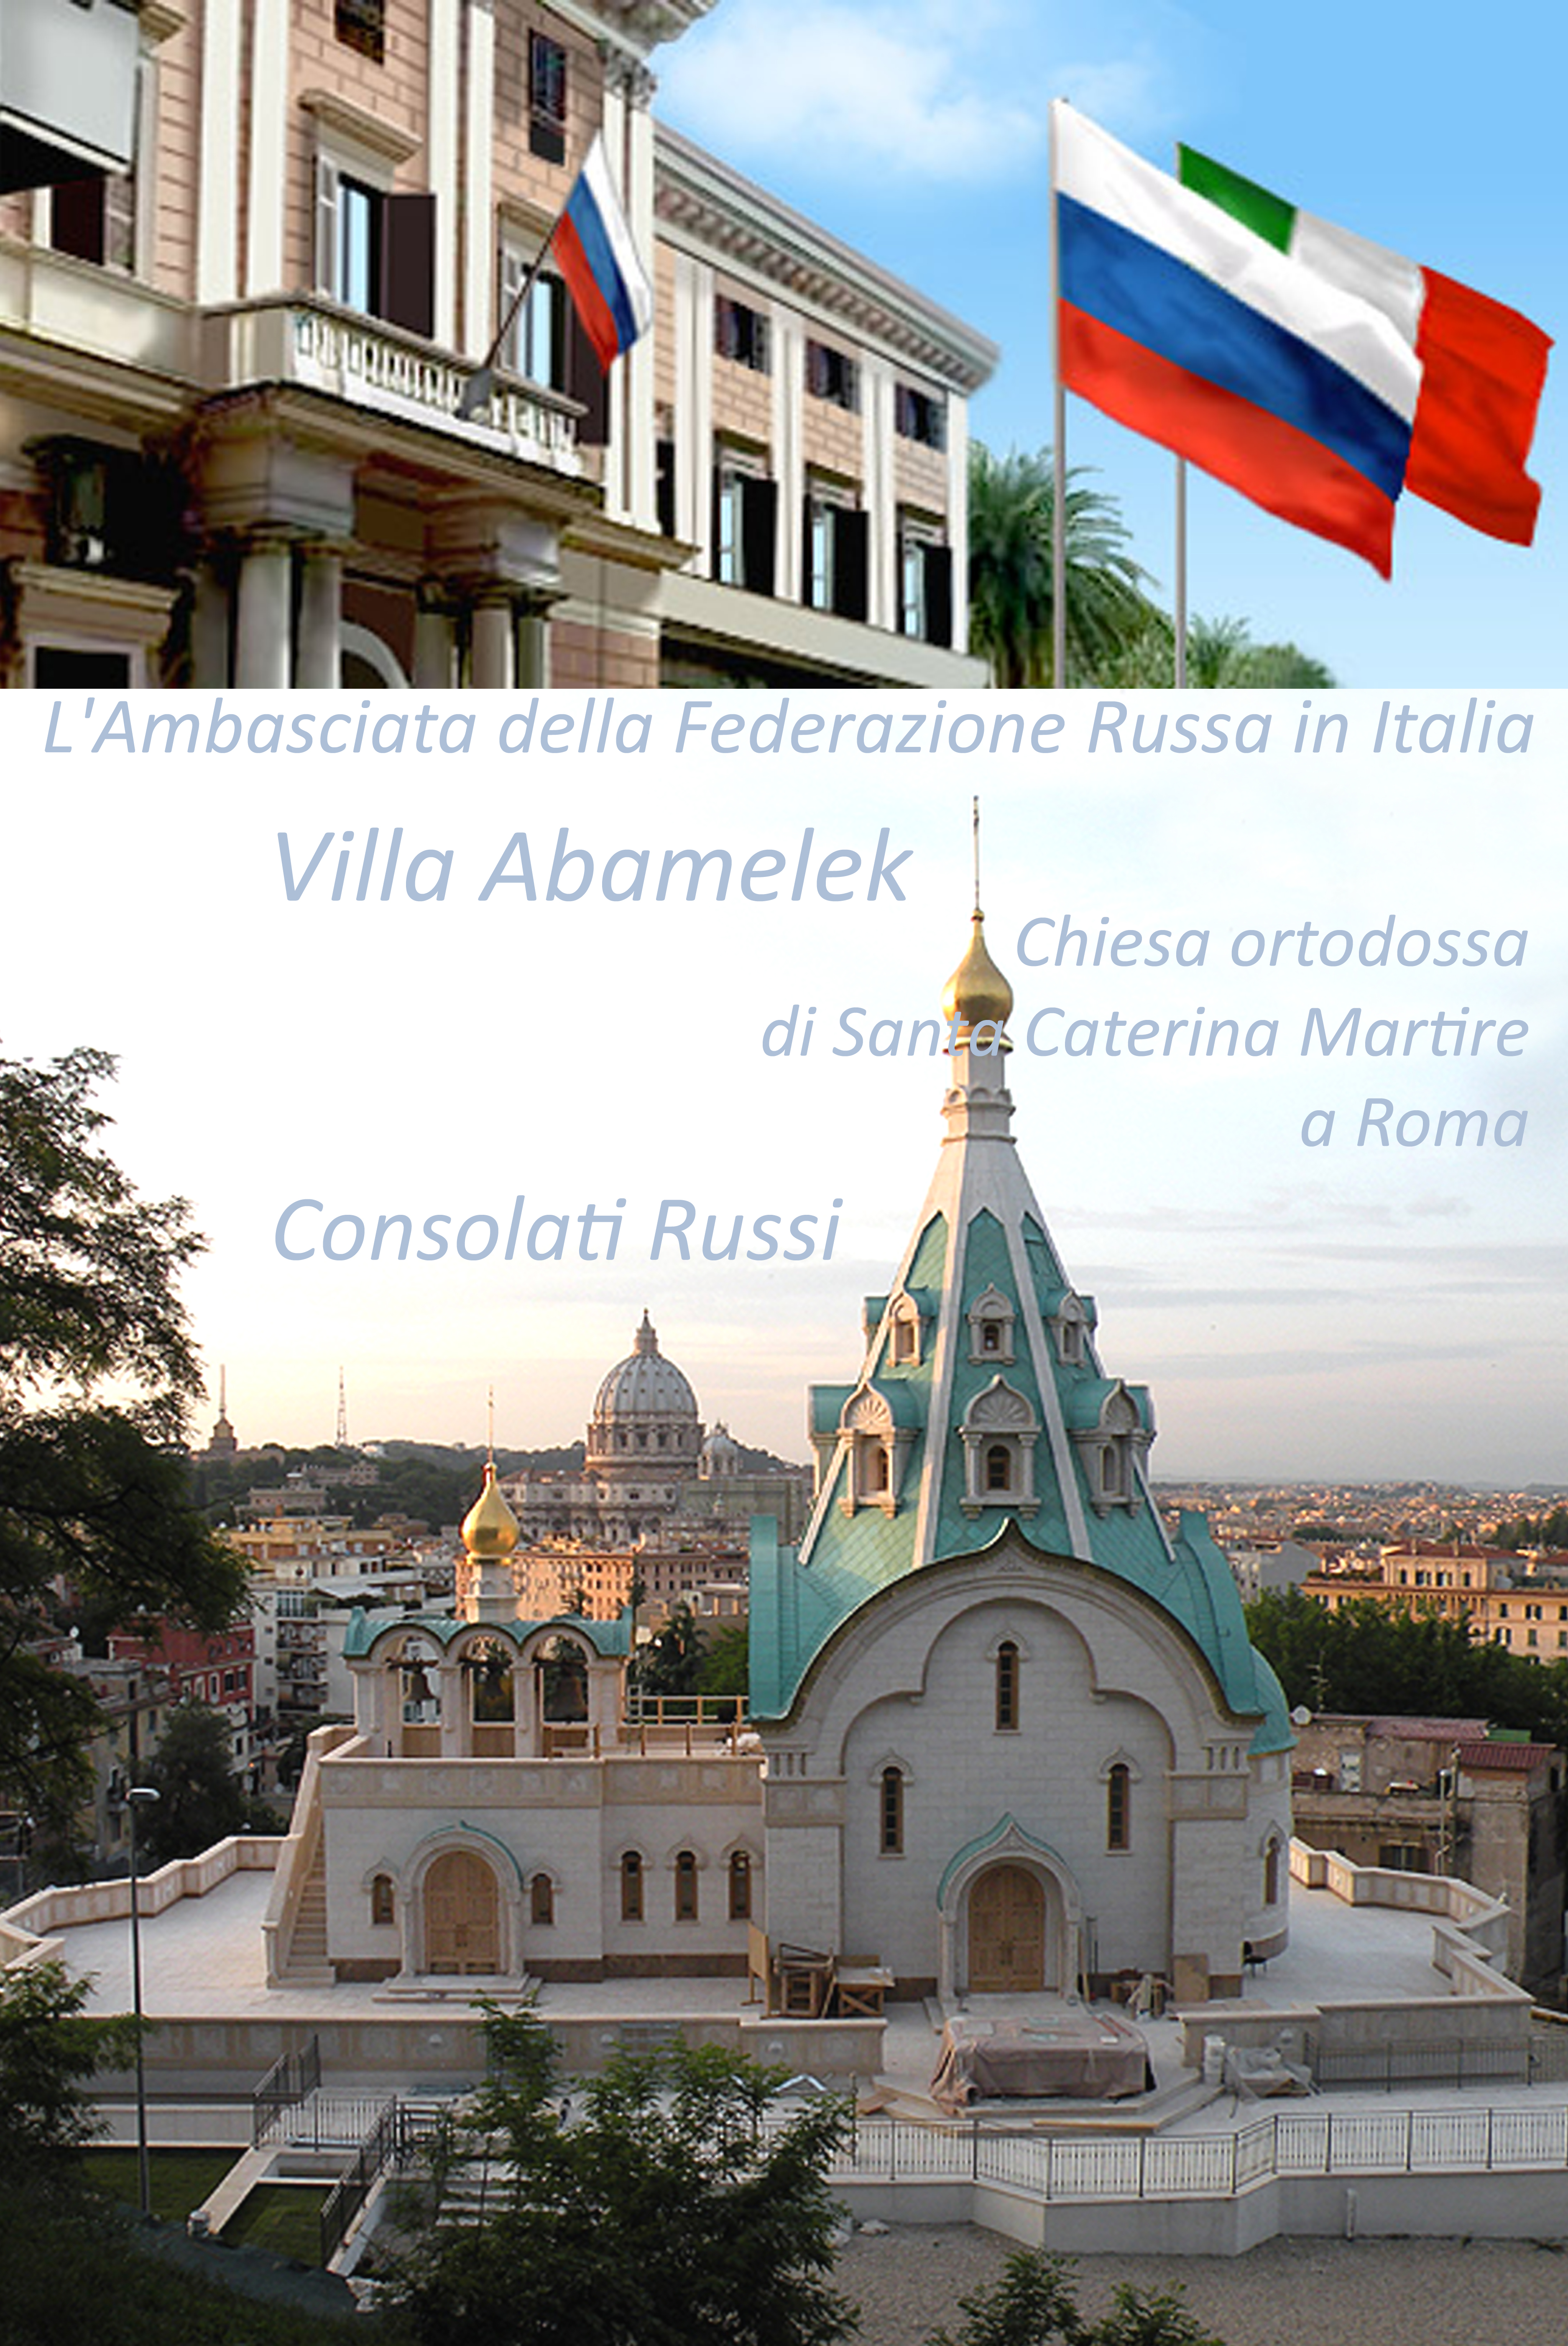 L'Ambasciata della Federazione Russa nella Repubblica Italiana